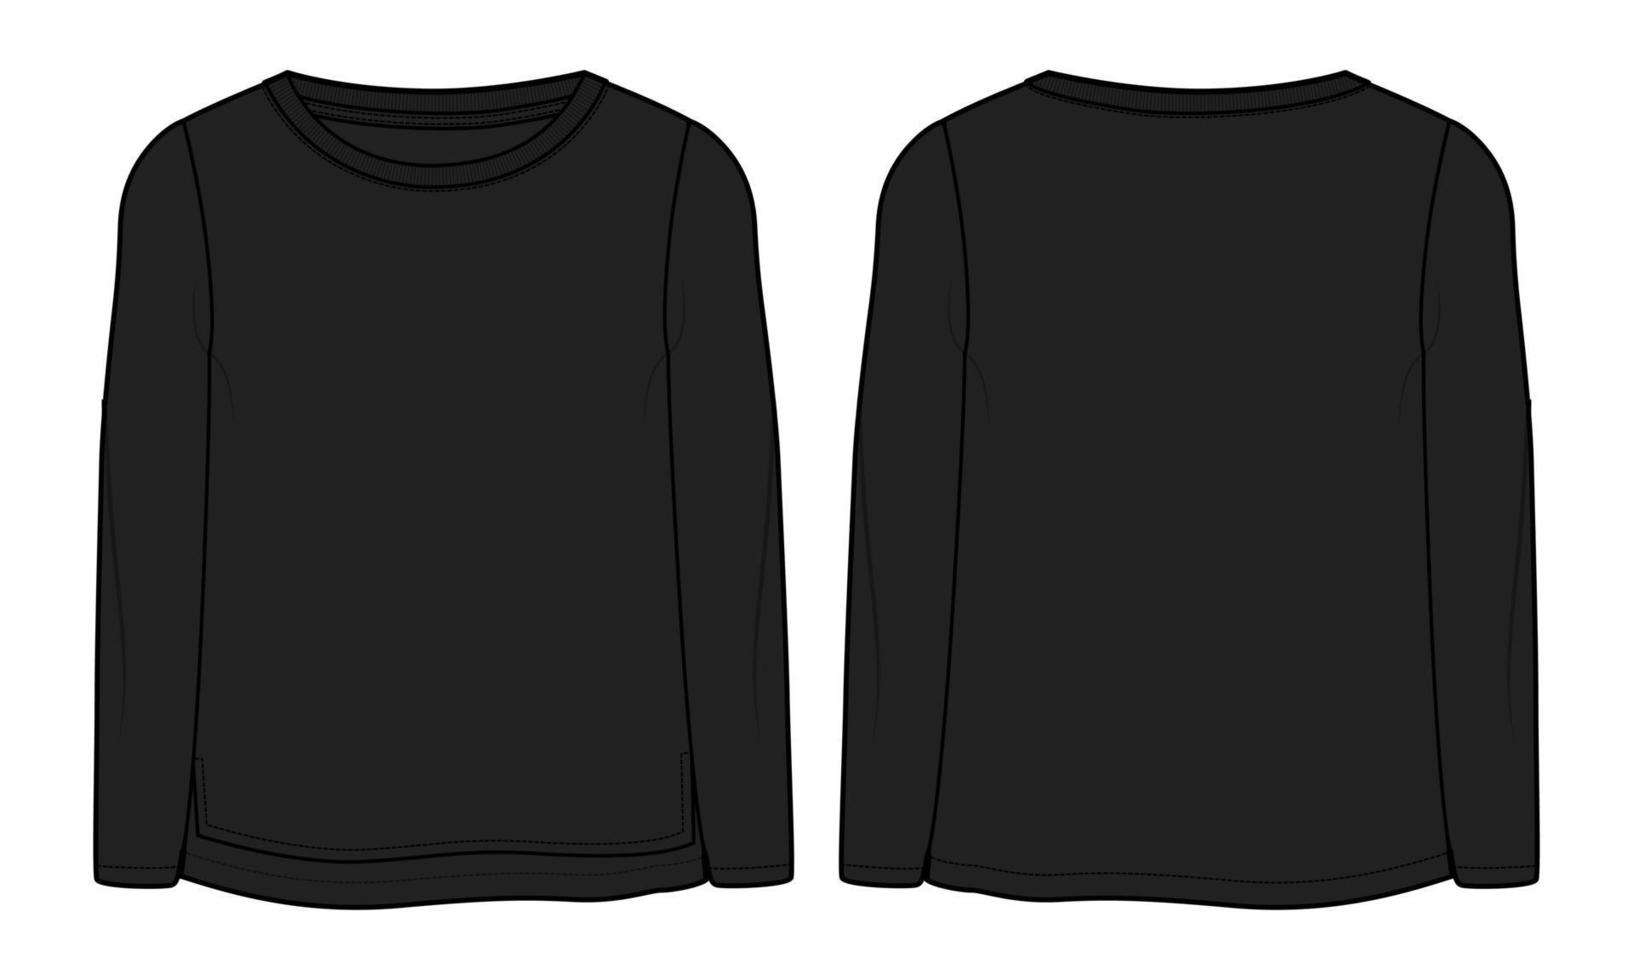 langärmliges t-shirt tops technische mode flache skizze vektor schwarze farbvorlage für damen